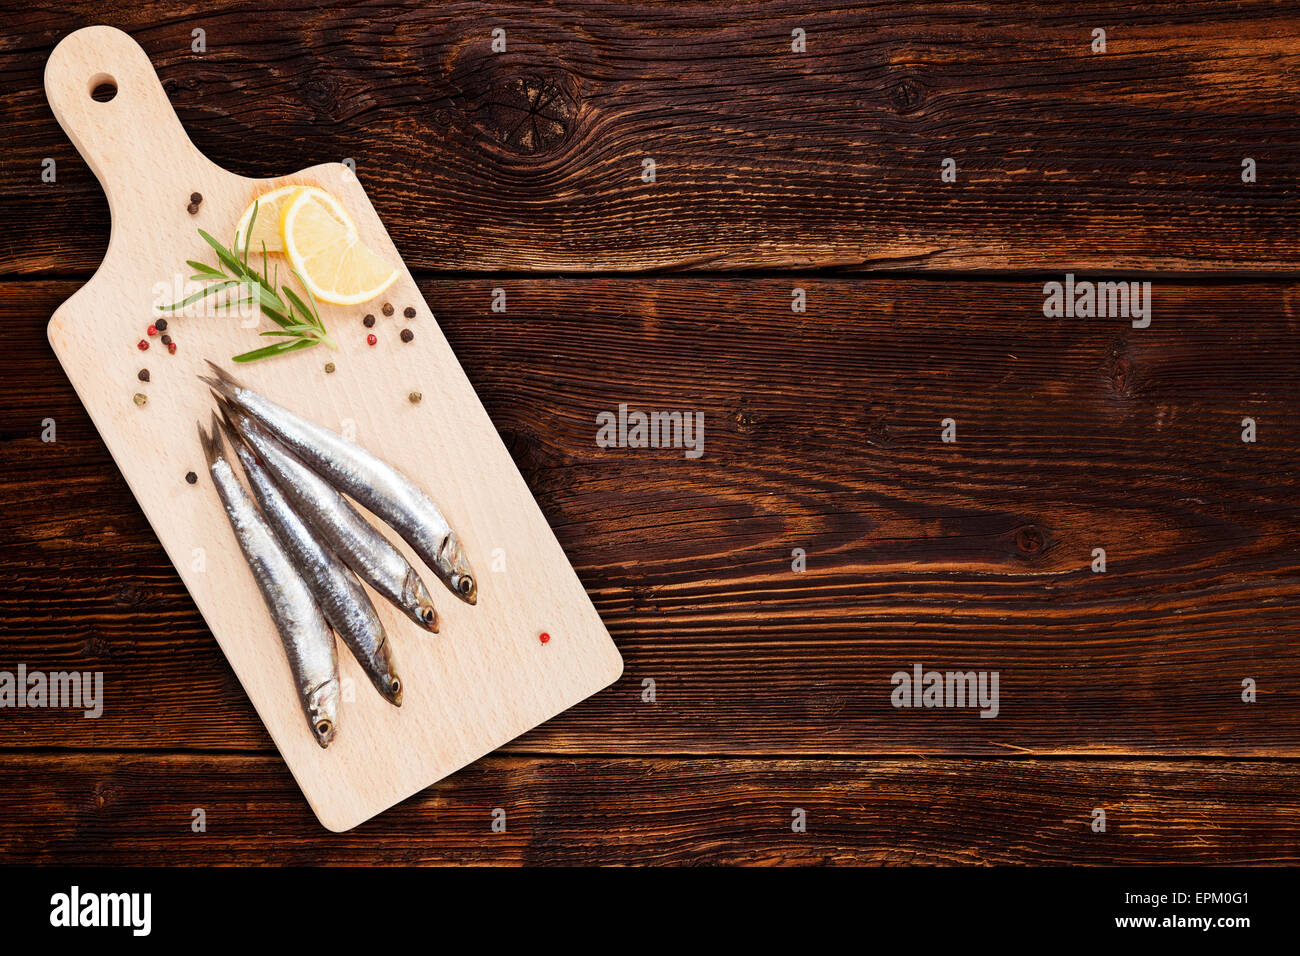 De délicieuses sardines fraîches sur cuisine en bois avec du citron, romarin et poivre colorés sur fond de bois Banque D'Images